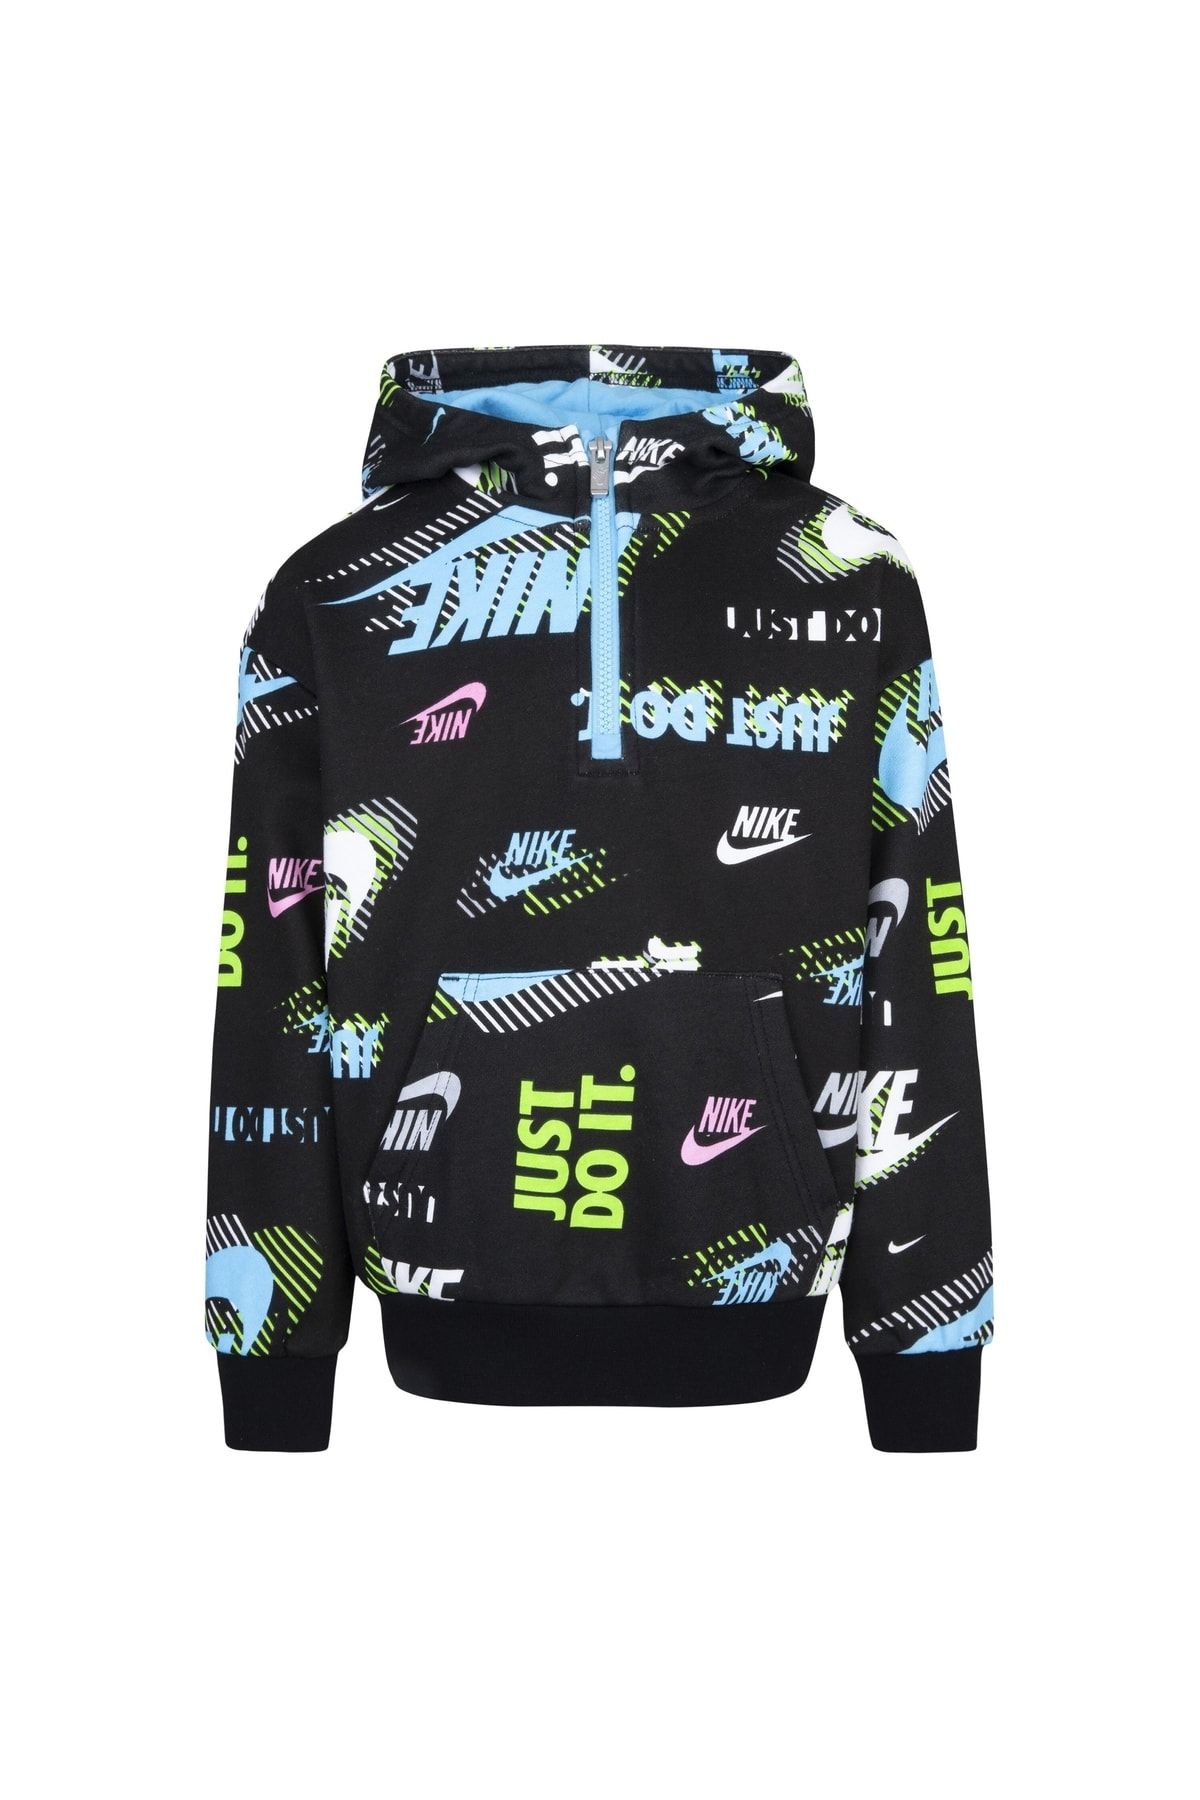 Nike Actıve Joy Ft Po Çocuk Sweatshirt